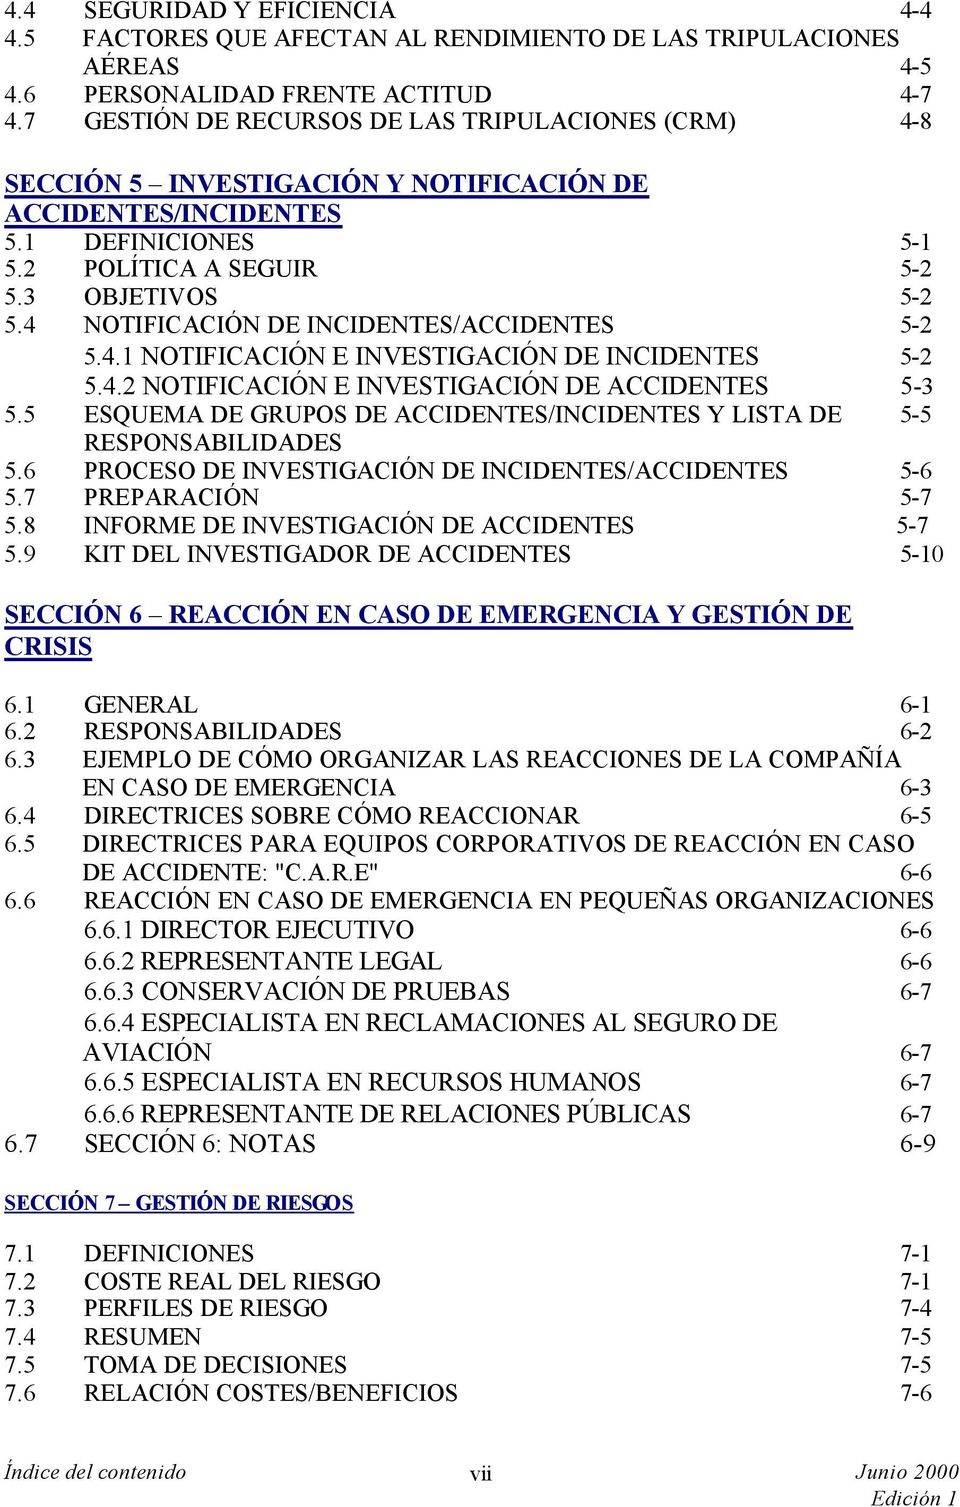 4 NOTIFICACIÓN DE INCIDENTES/ACCIDENTES 5-2 5.4.1 NOTIFICACIÓN E INVESTIGACIÓN DE INCIDENTES 5-2 5.4.2 NOTIFICACIÓN E INVESTIGACIÓN DE ACCIDENTES 5-3 5.